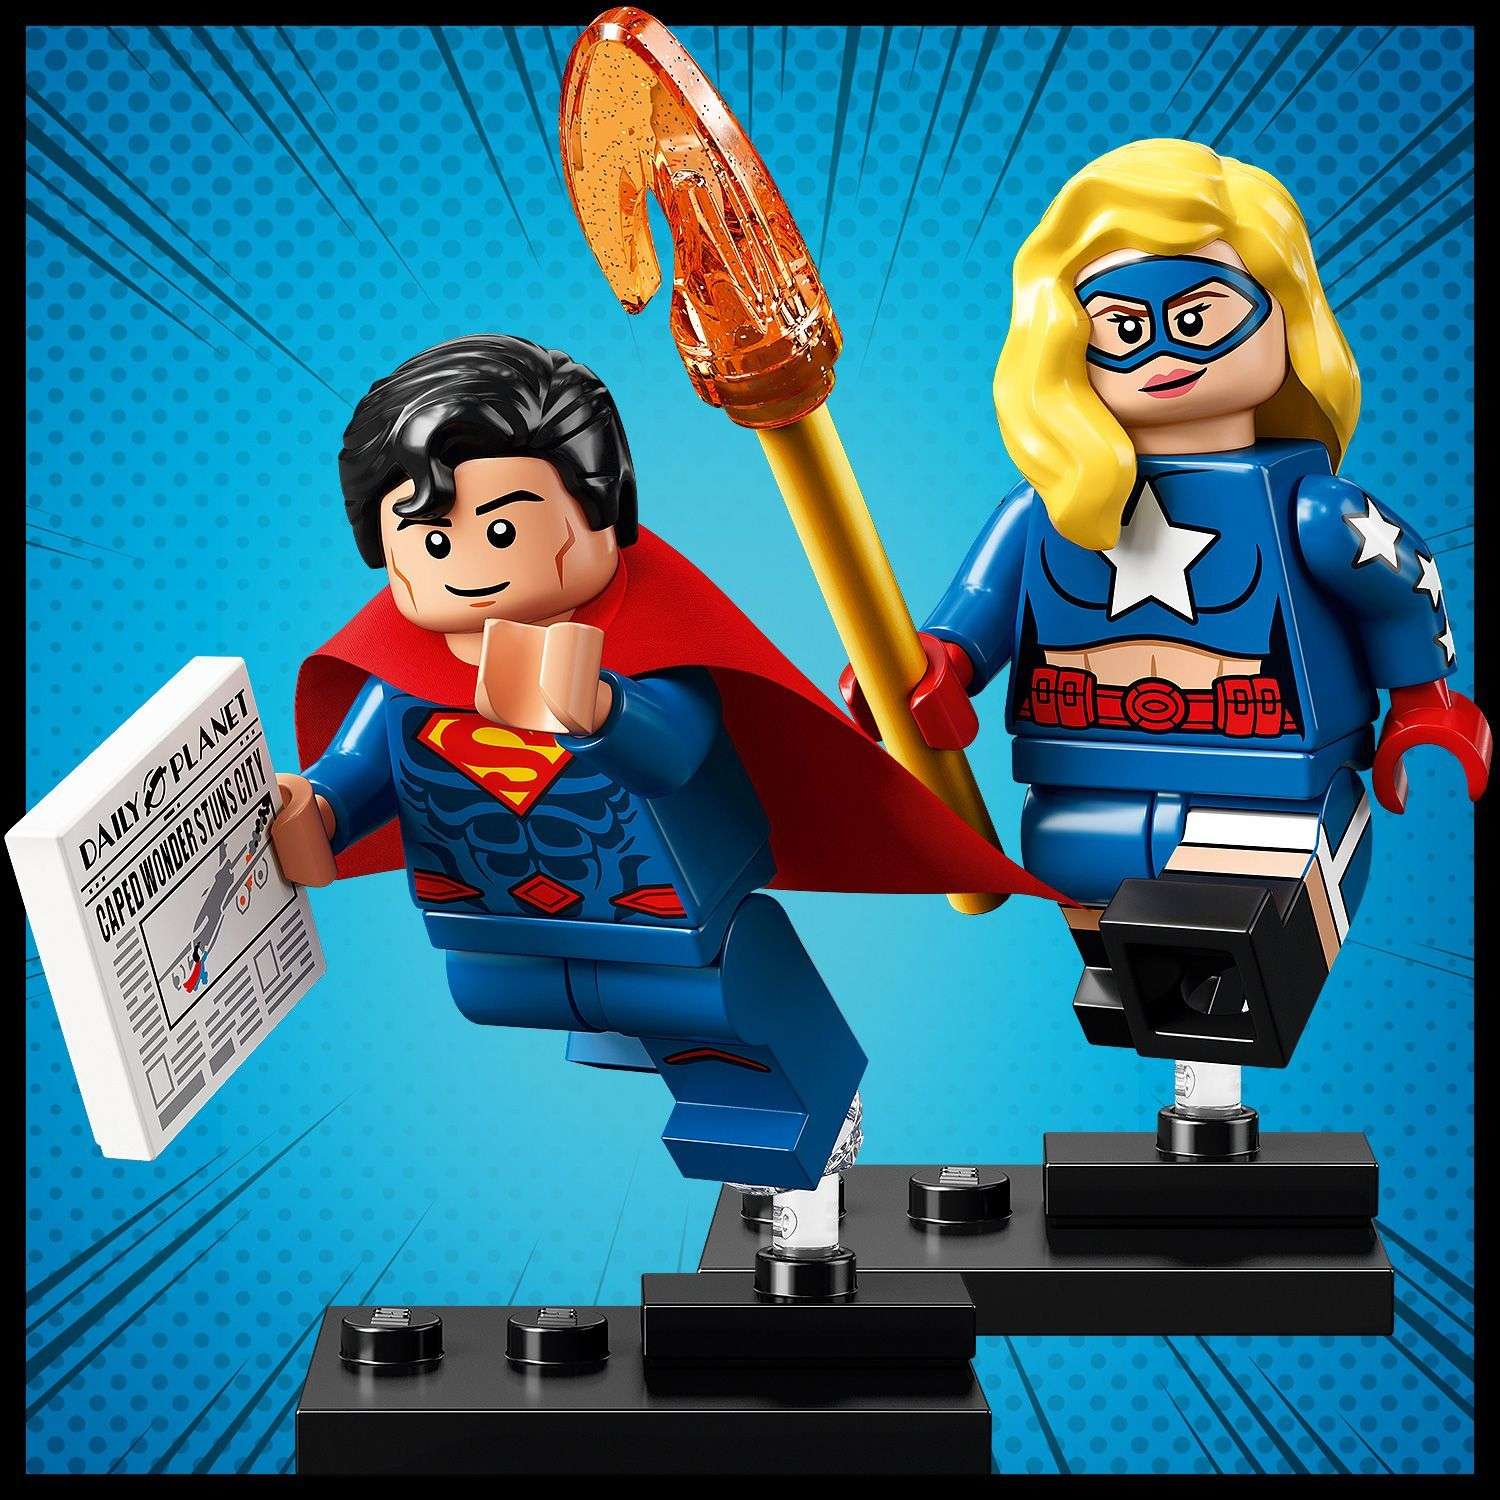 Конструктор LEGO Minifigures DC Super Heroes Series 71026-2 - фото 8